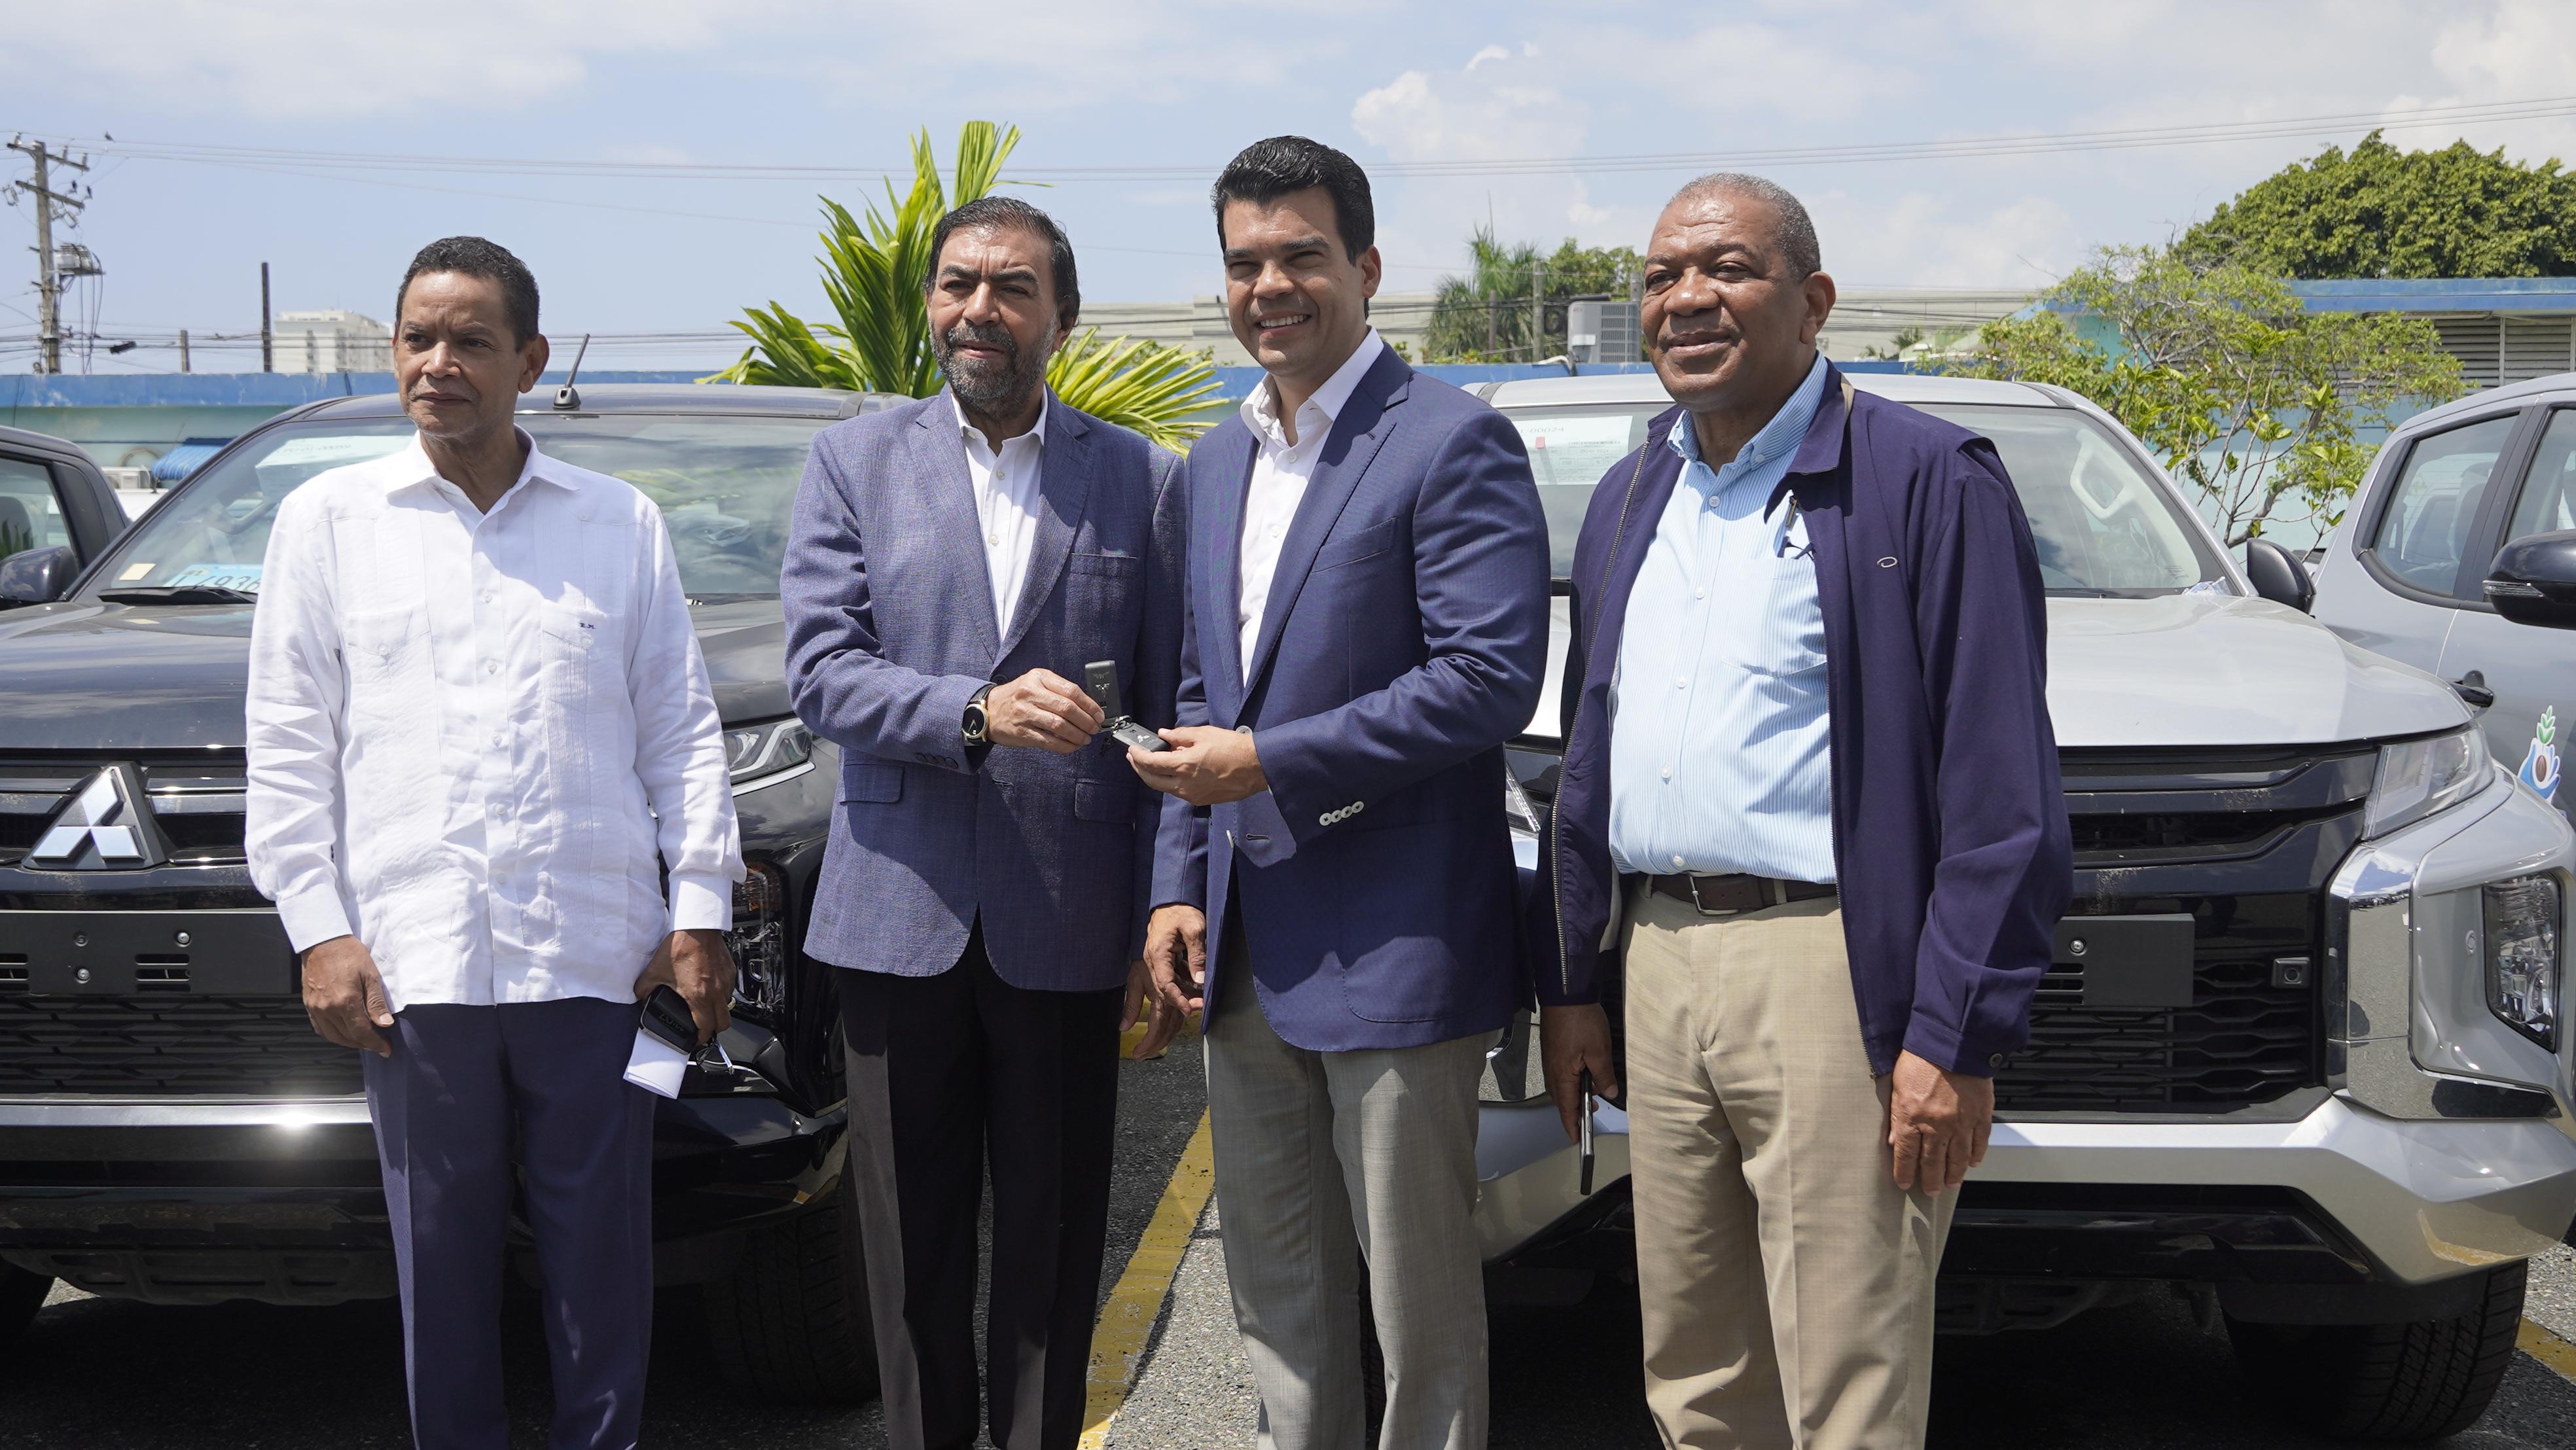 REPÚBLICA DOMINICANA: Indrhi entrega 76 vehículos a Medio Ambiente, Agricultura e Inapa; son consignados al proyecto Pargirh